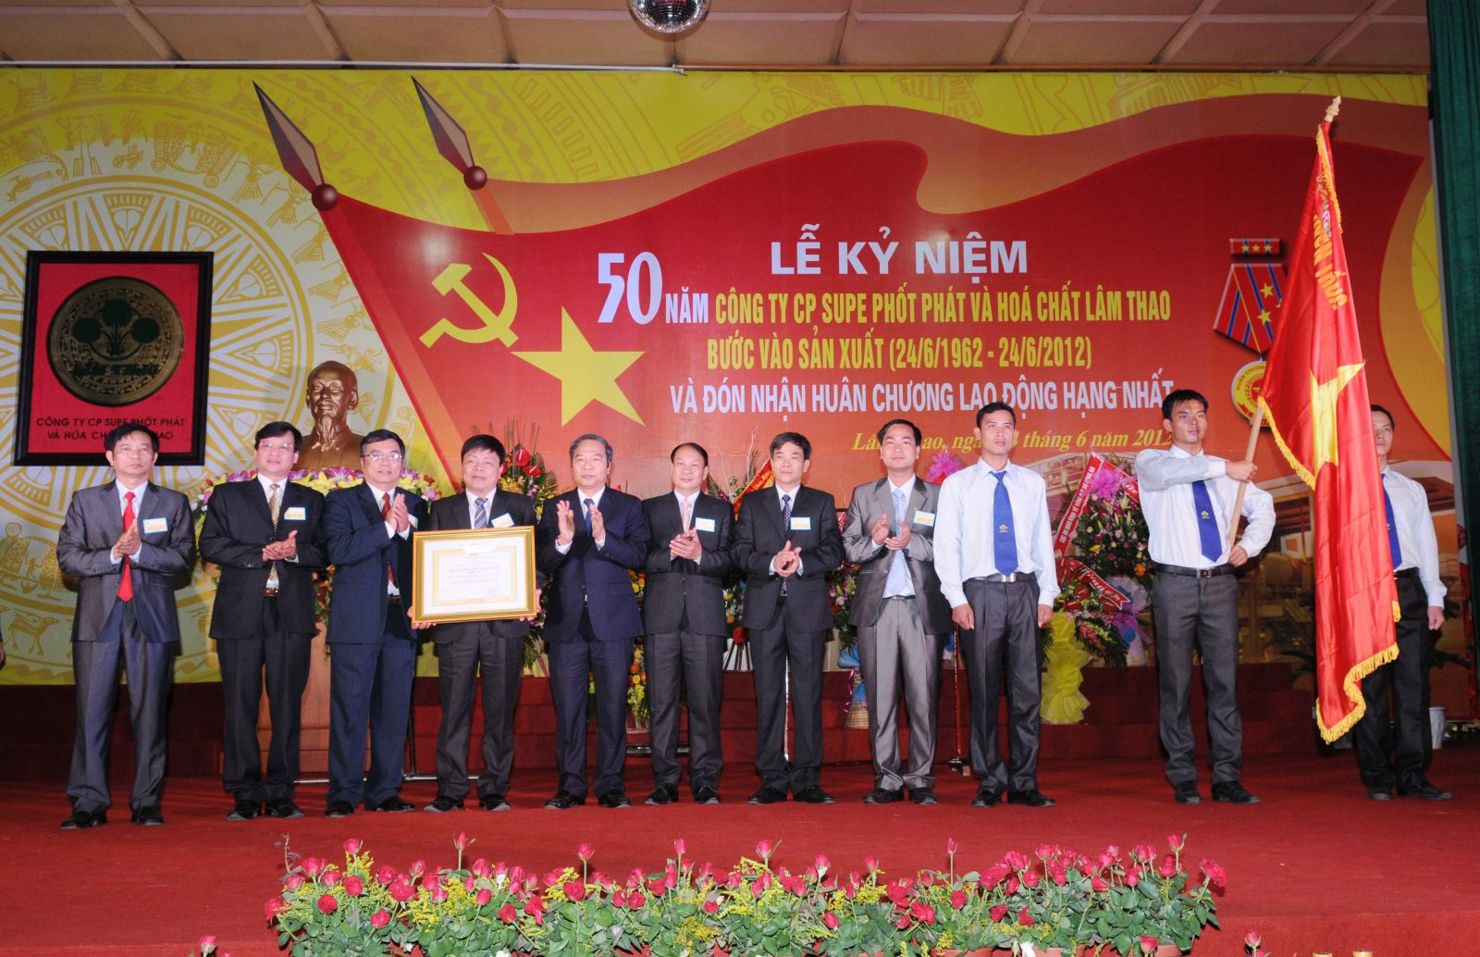 Công ty cổ phần Supe phốt phát và Hóa chất Lâm Thao đã ba lần vinh dự được Đảng và Nhà nước trao tặng danh hiệu Anh hùng. Nguồn: internet